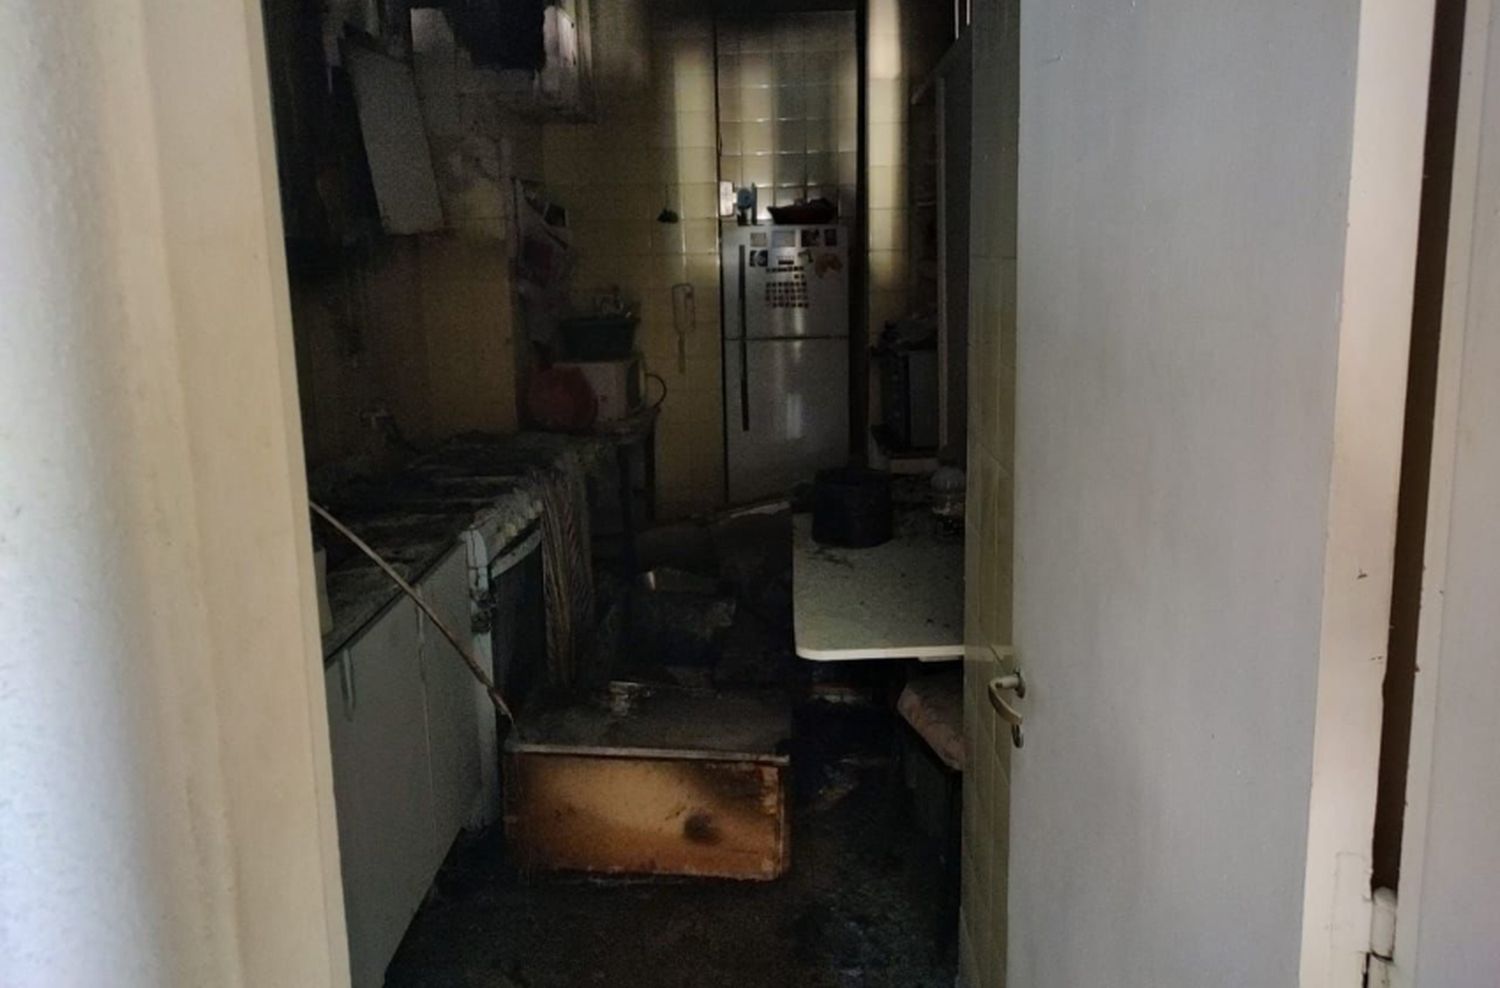 Incendio en un departamento céntrico: se olvidó un sartén con la hornalla encendida